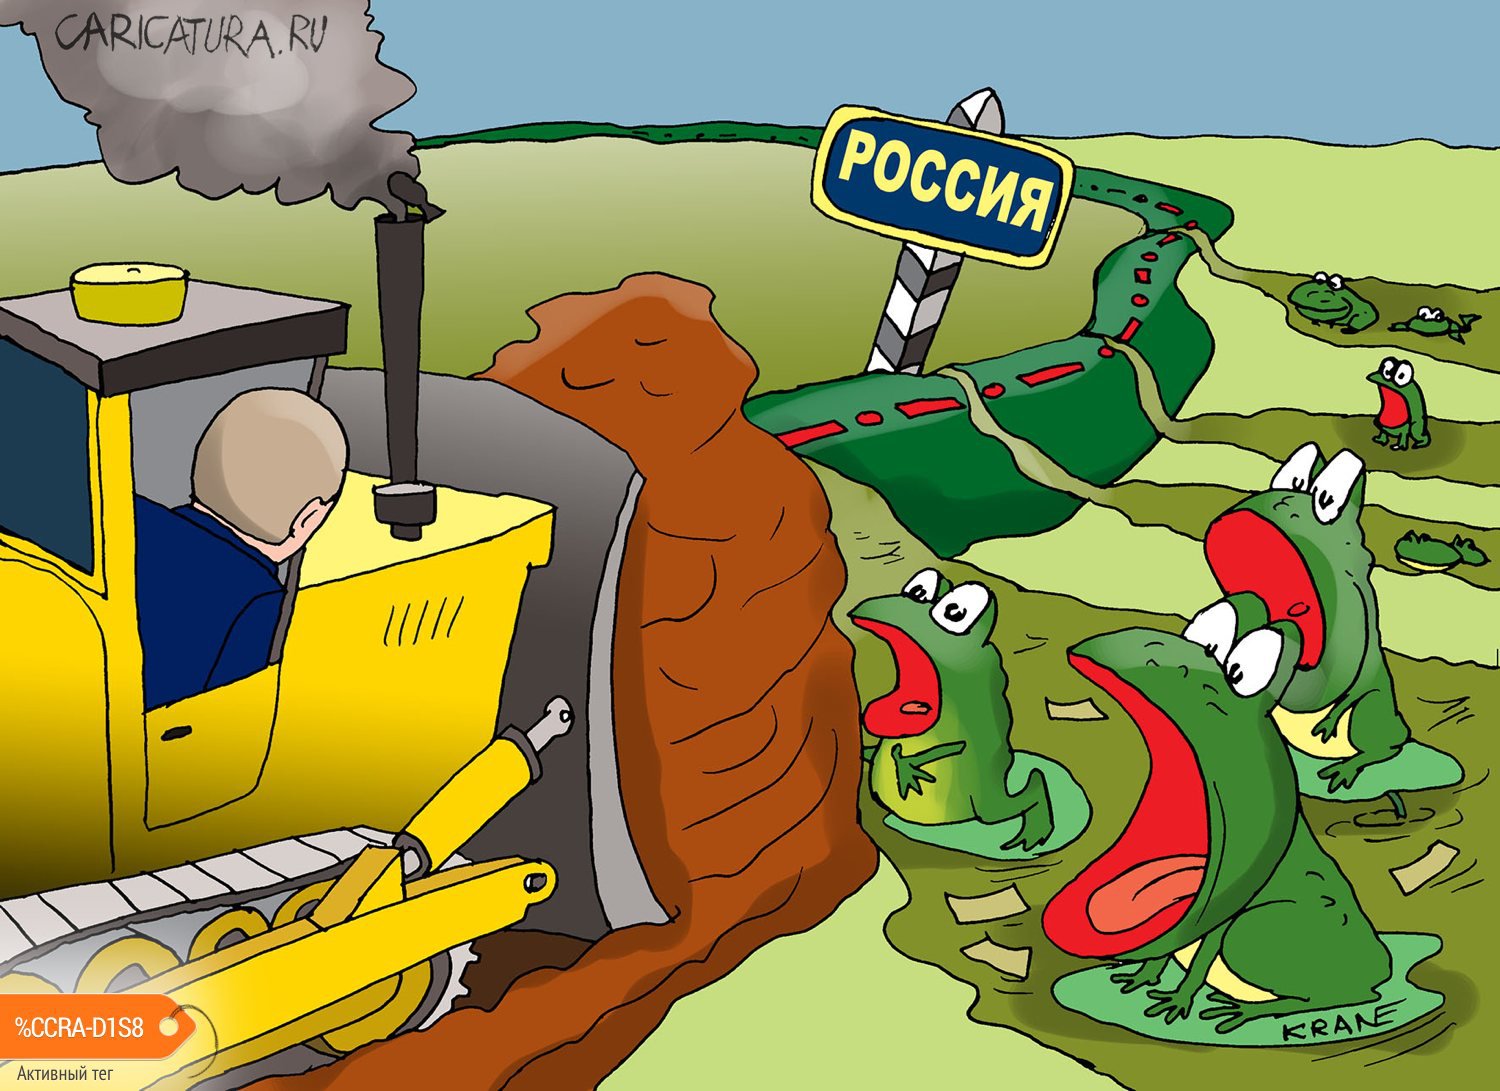 Карикатура "Владимир Путин перекрывает мутный поток", Евгений Кран